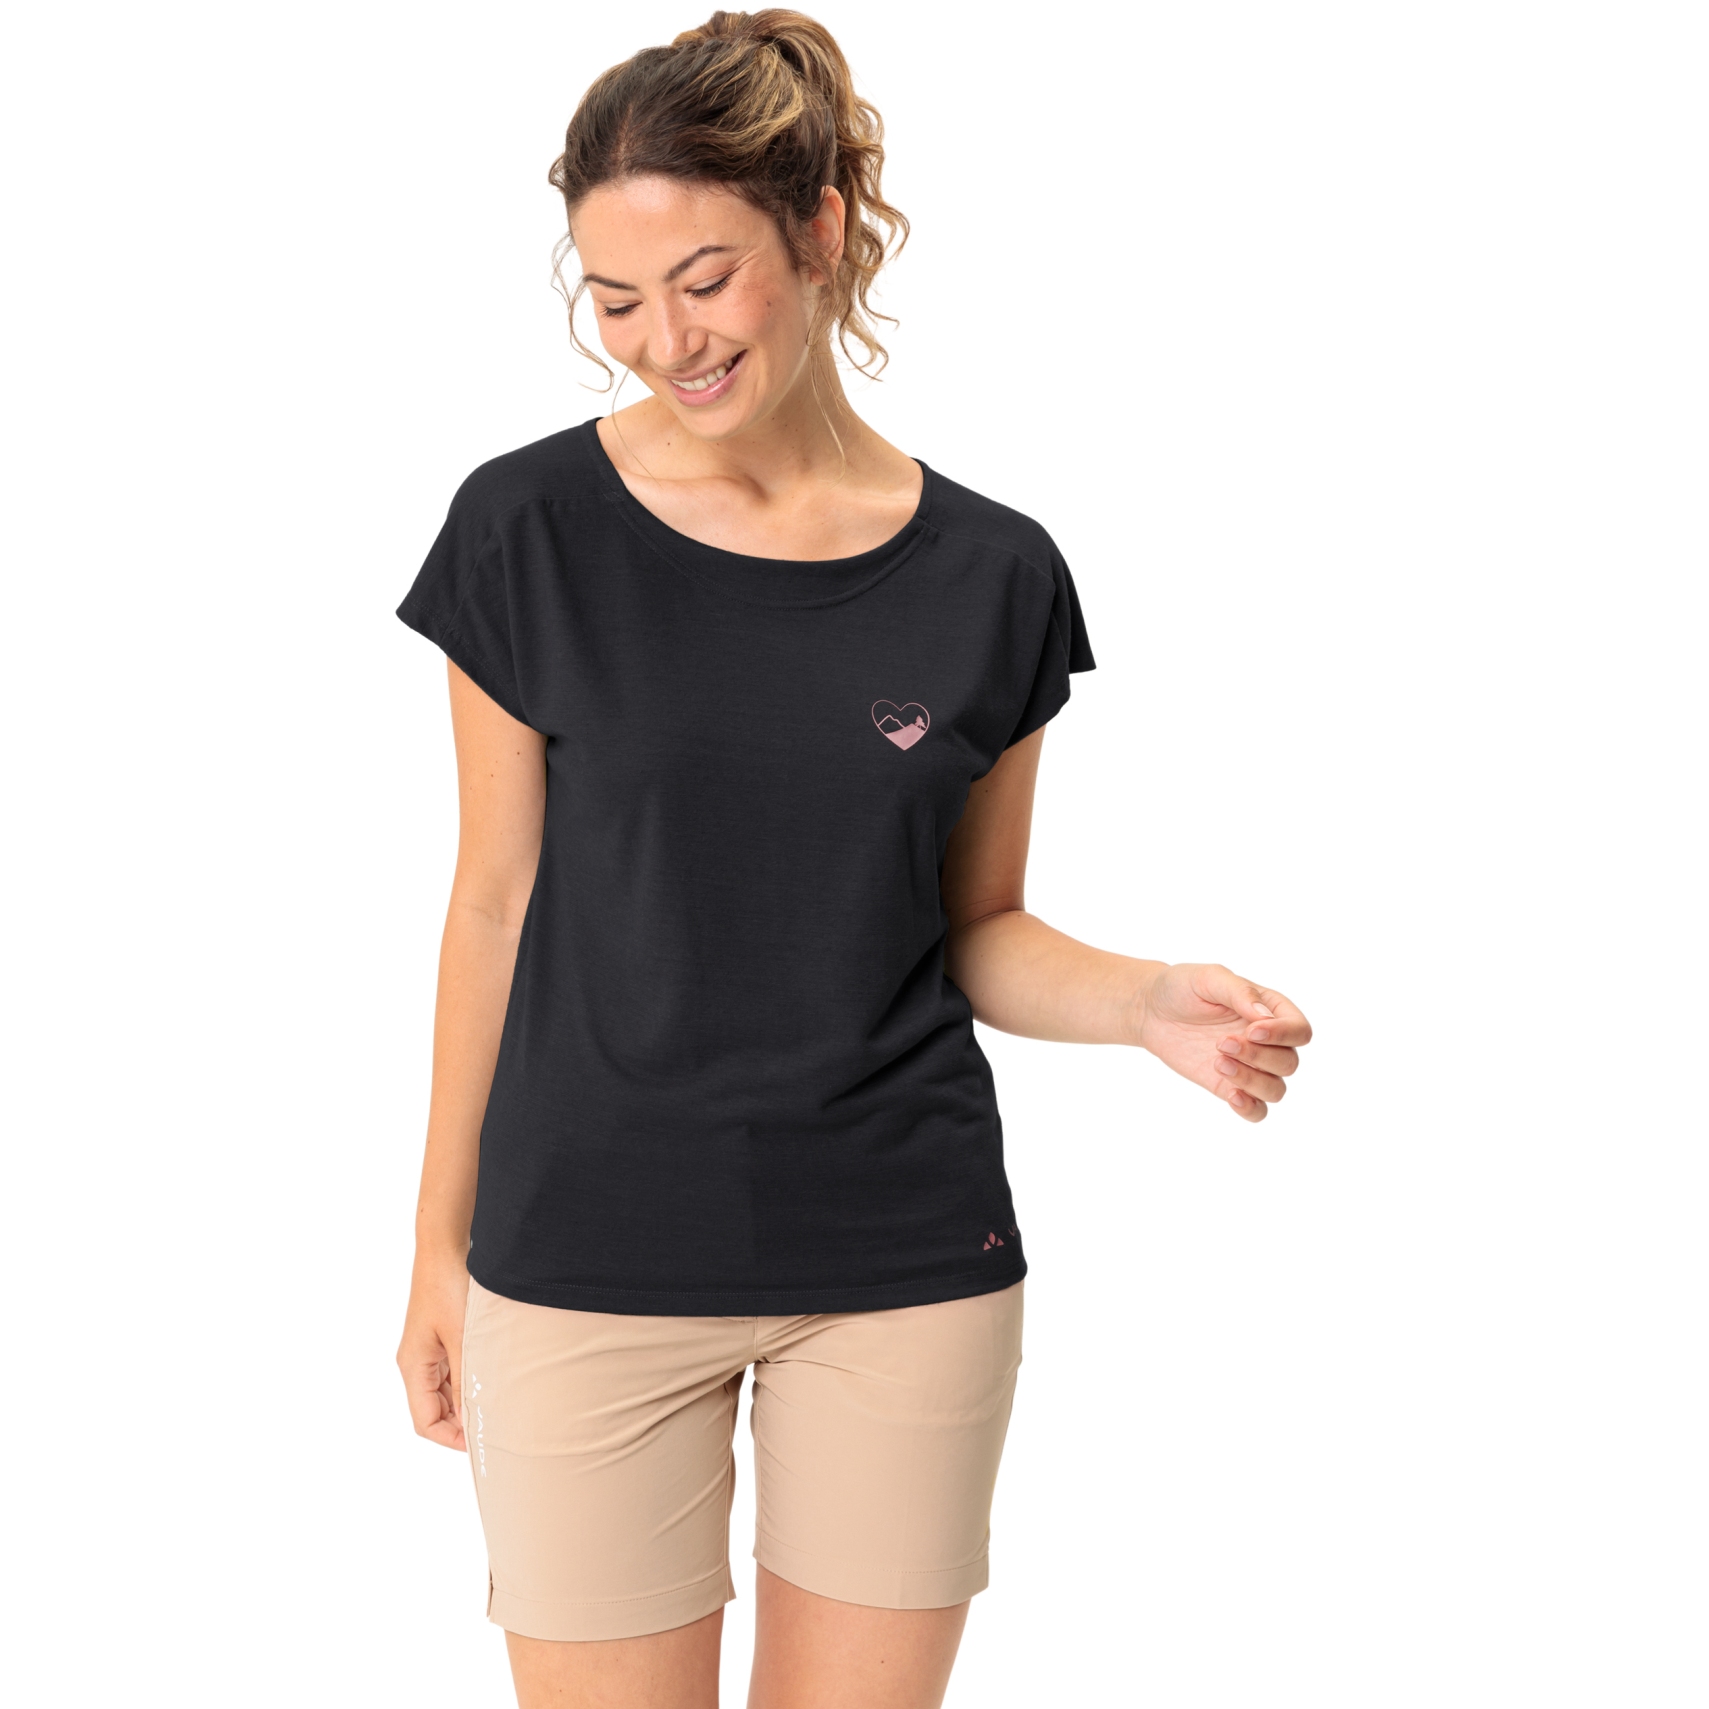 Produktbild von Vaude Neyland T-Shirt Damen - schwarz uni